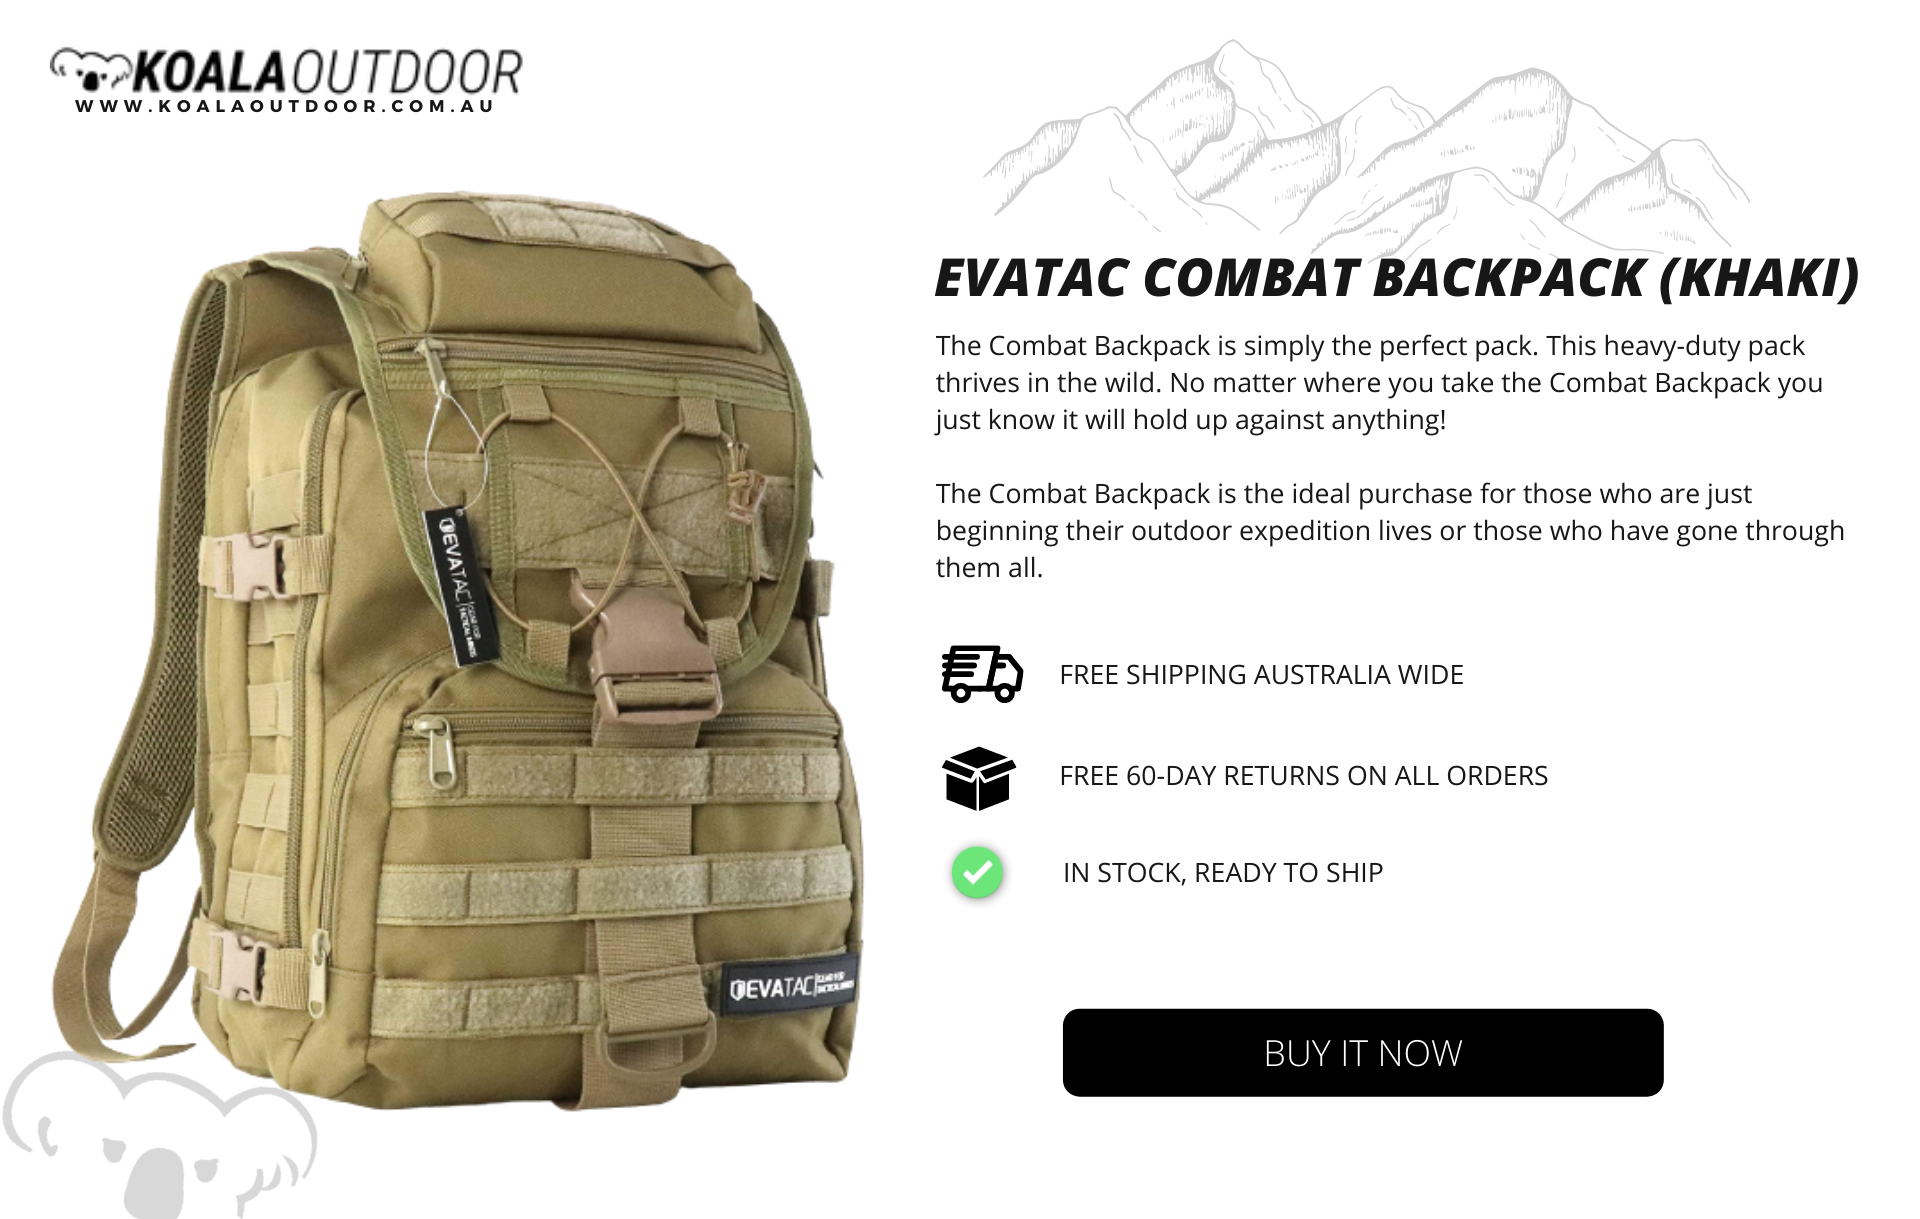 Evatac Combat Backpack